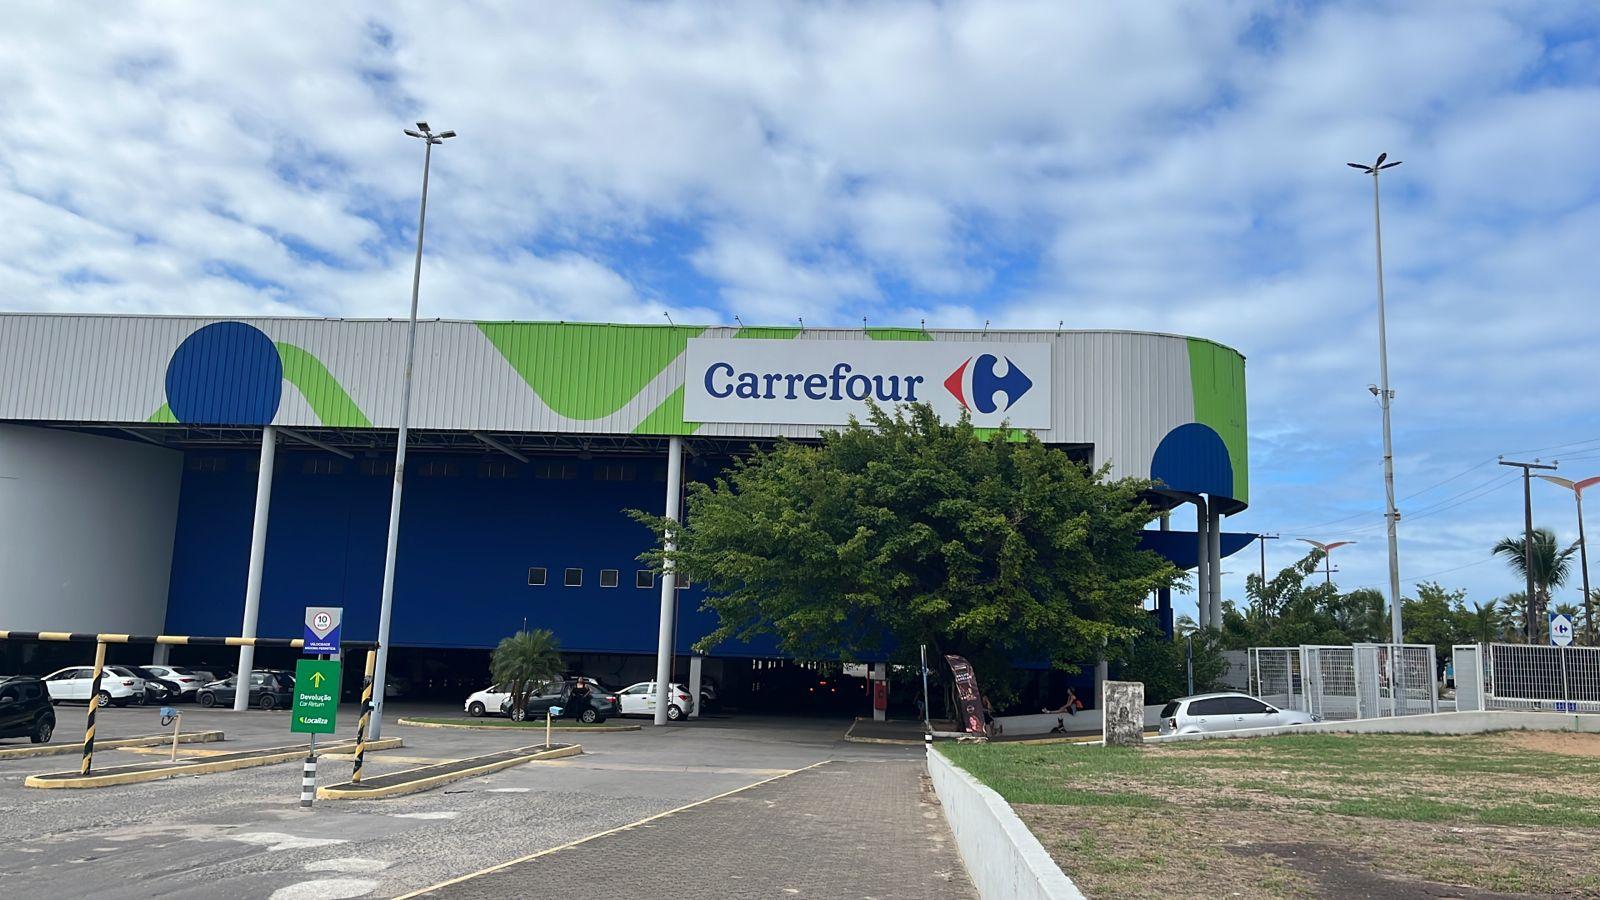 Carrefour fecha lojas na Bahia e deixa mais de 600 desempregados